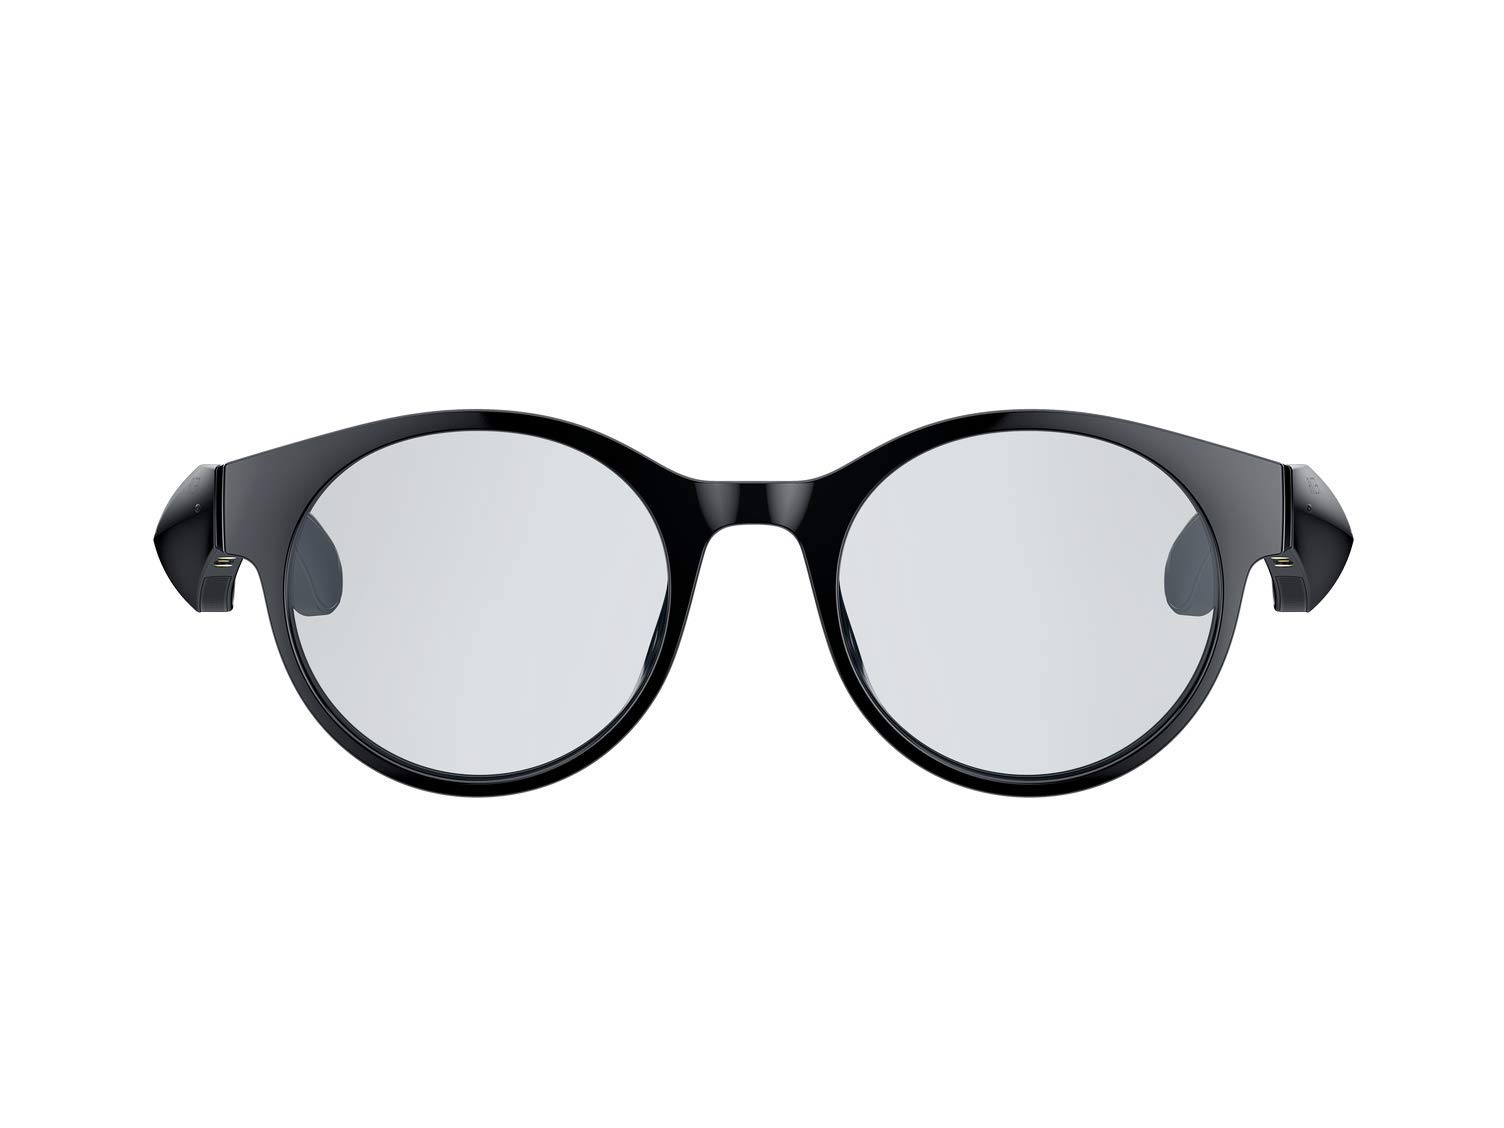 Razer Anzu Smart Glasses (runde, große Gläser) - Audio-Brille mit Blaulicht- oder Sonnenschutz-Filter (Integriertes Mikrofon + Lautsprecher, 5 Stunden Akku, spritzwassergeschützt) Schwarz